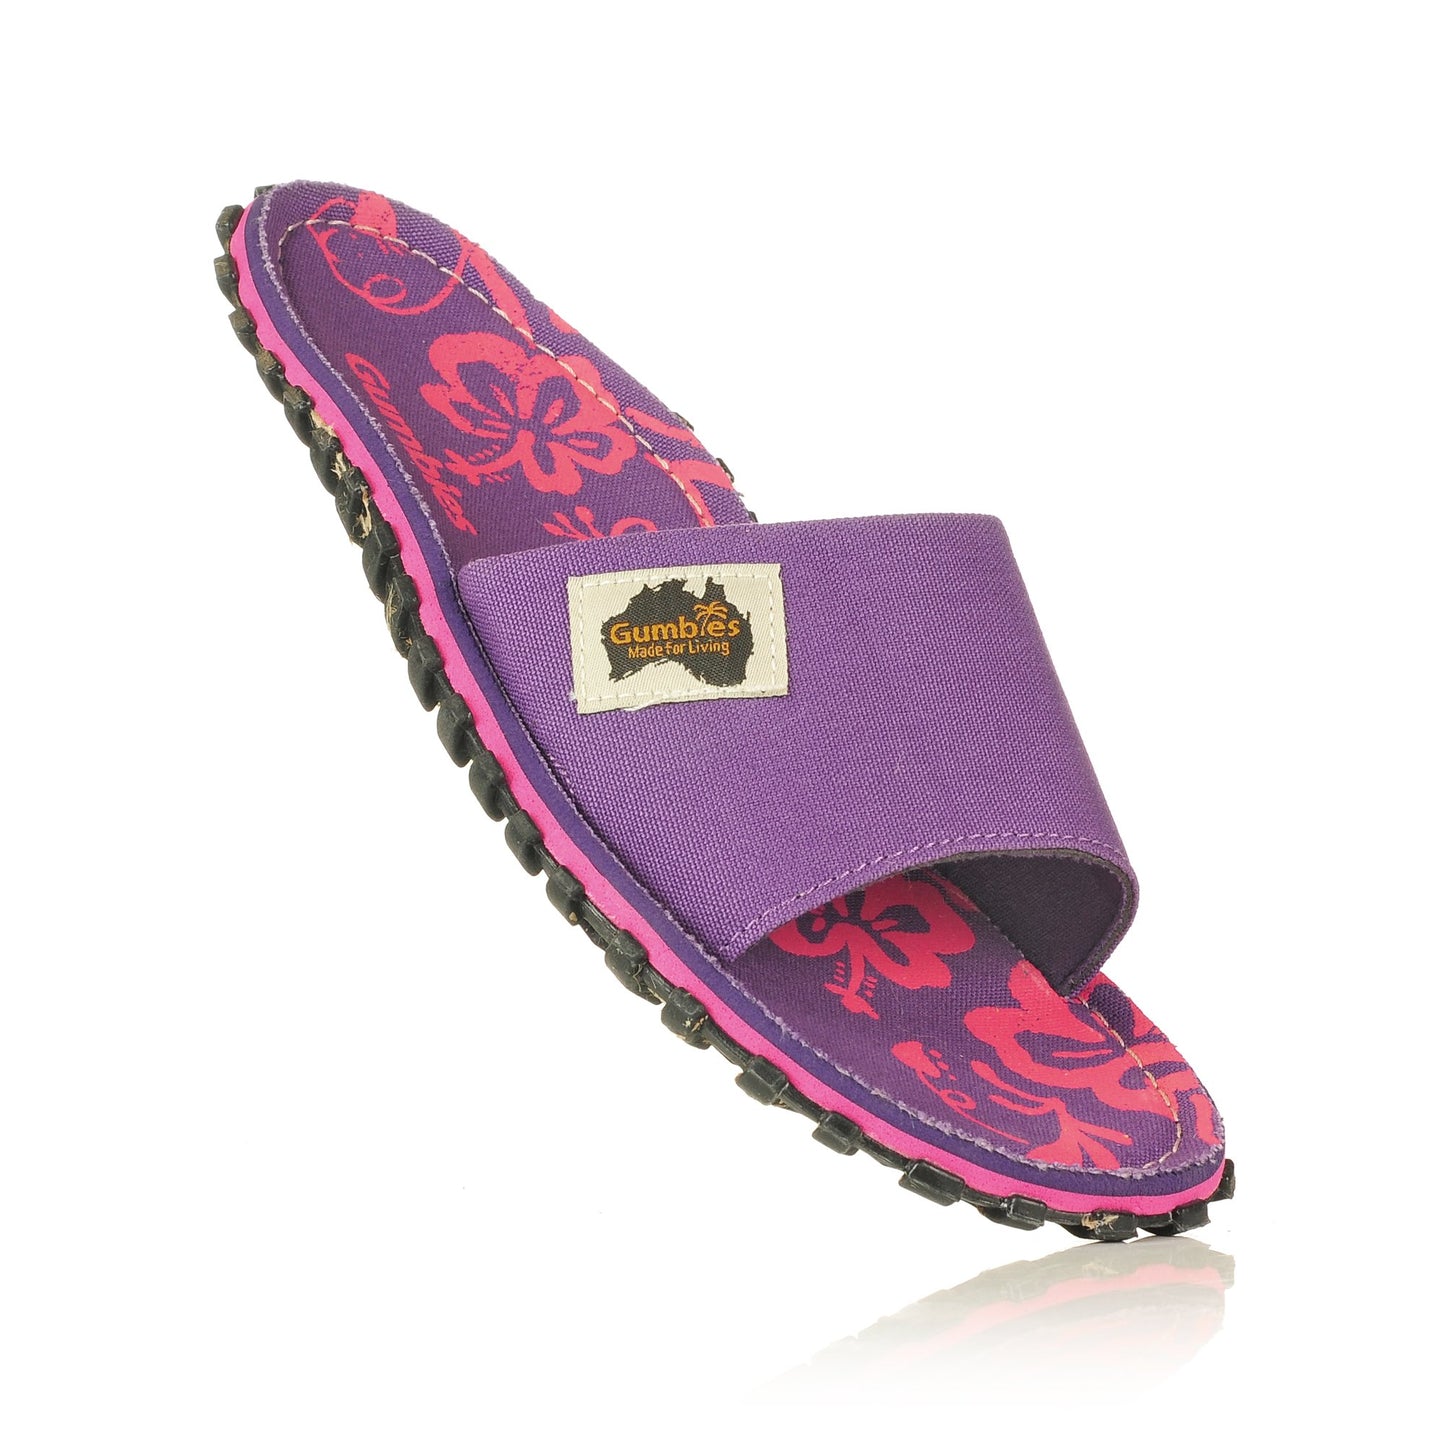 Islander Kanvas Slide - Purple Hibiscus